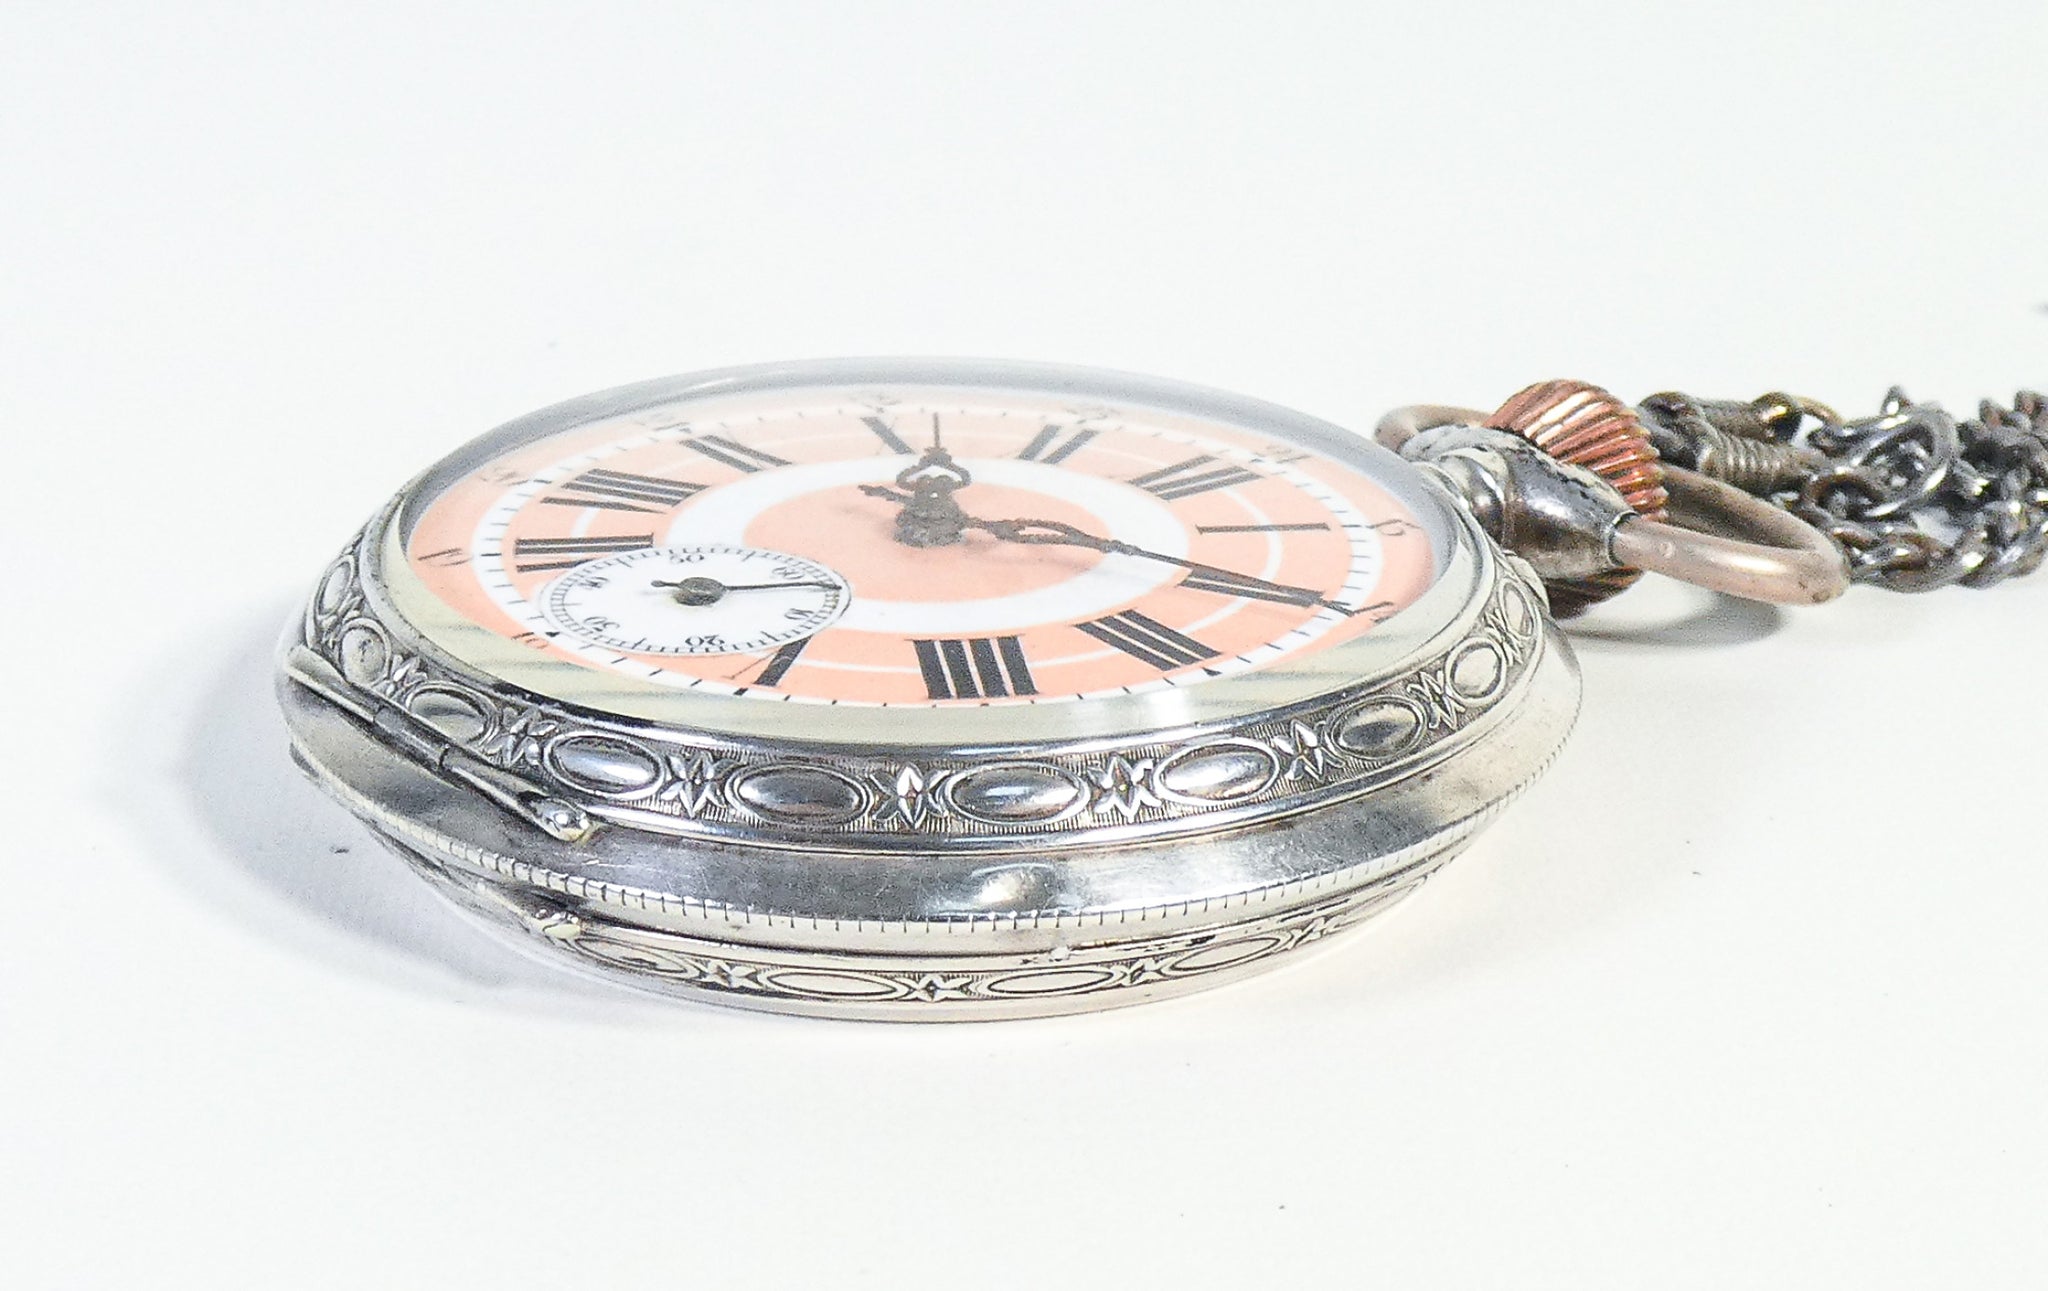 orologio tasca argento 800 svizzera epoca 1800 carica manuale funzionante antico